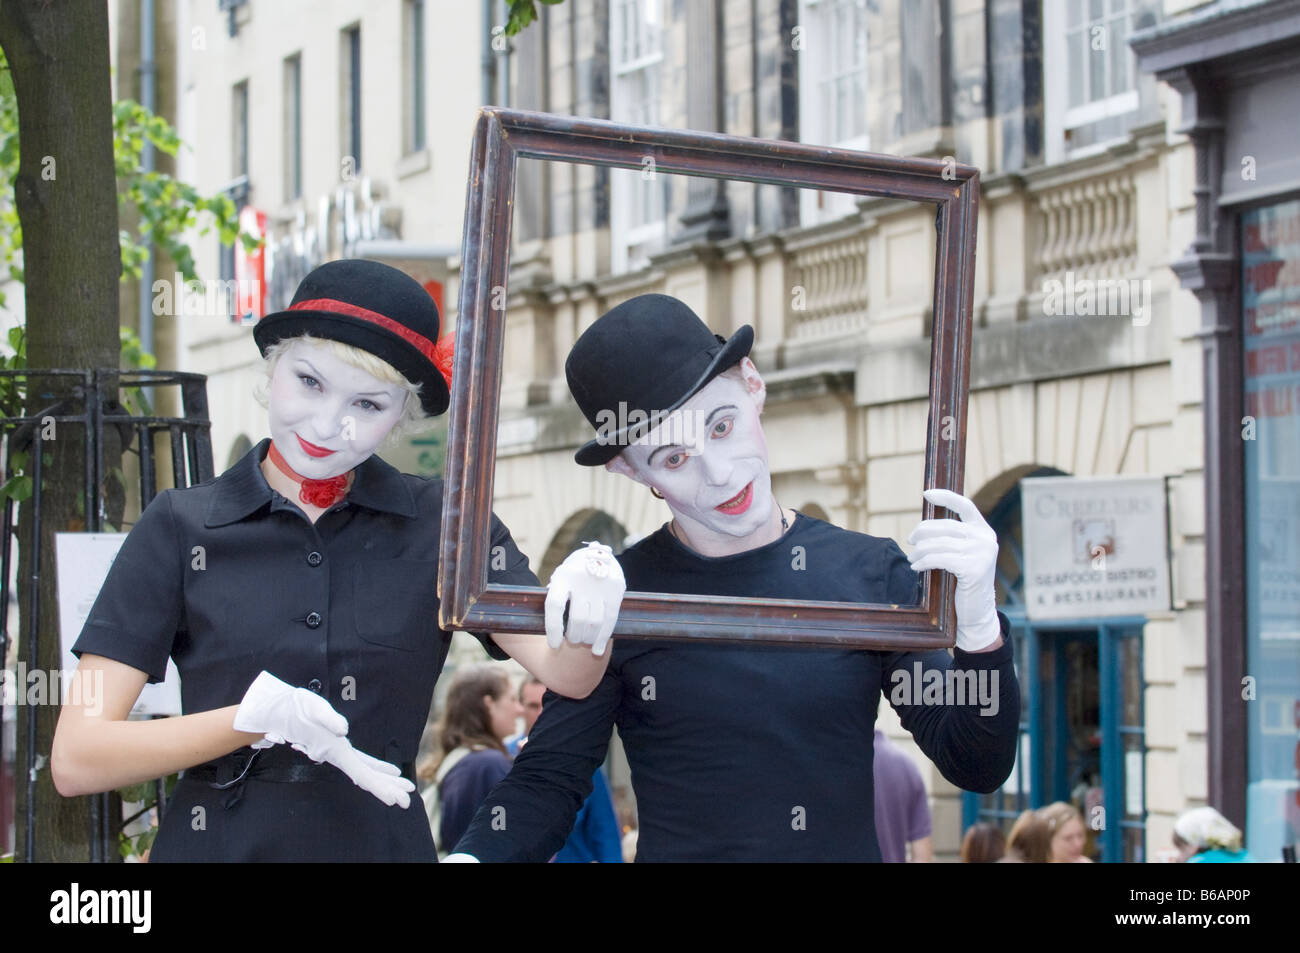 MIME-Akteure ihre Show auf der High Street in Edinburgh während des jährlichen Edinburgh Fringe Festival Werbung Stockfoto